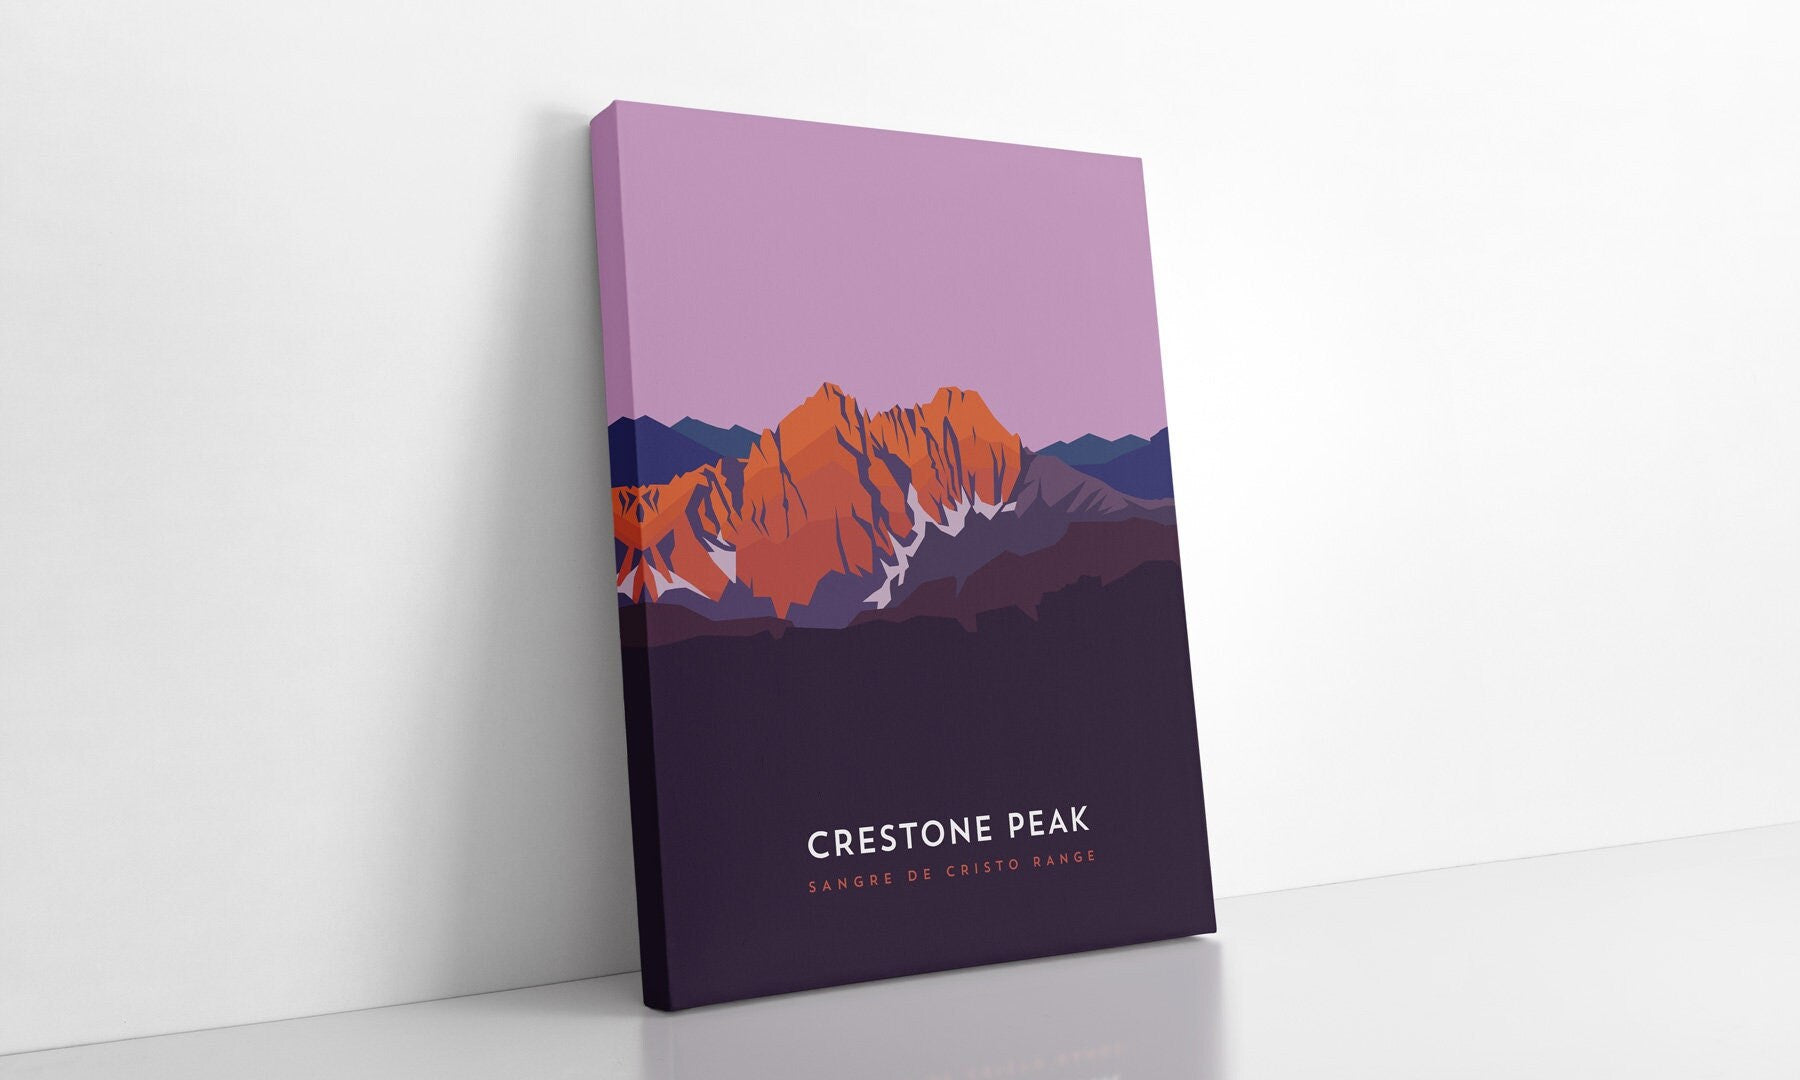 Crestone Peak Colorado 14er Canvas Print